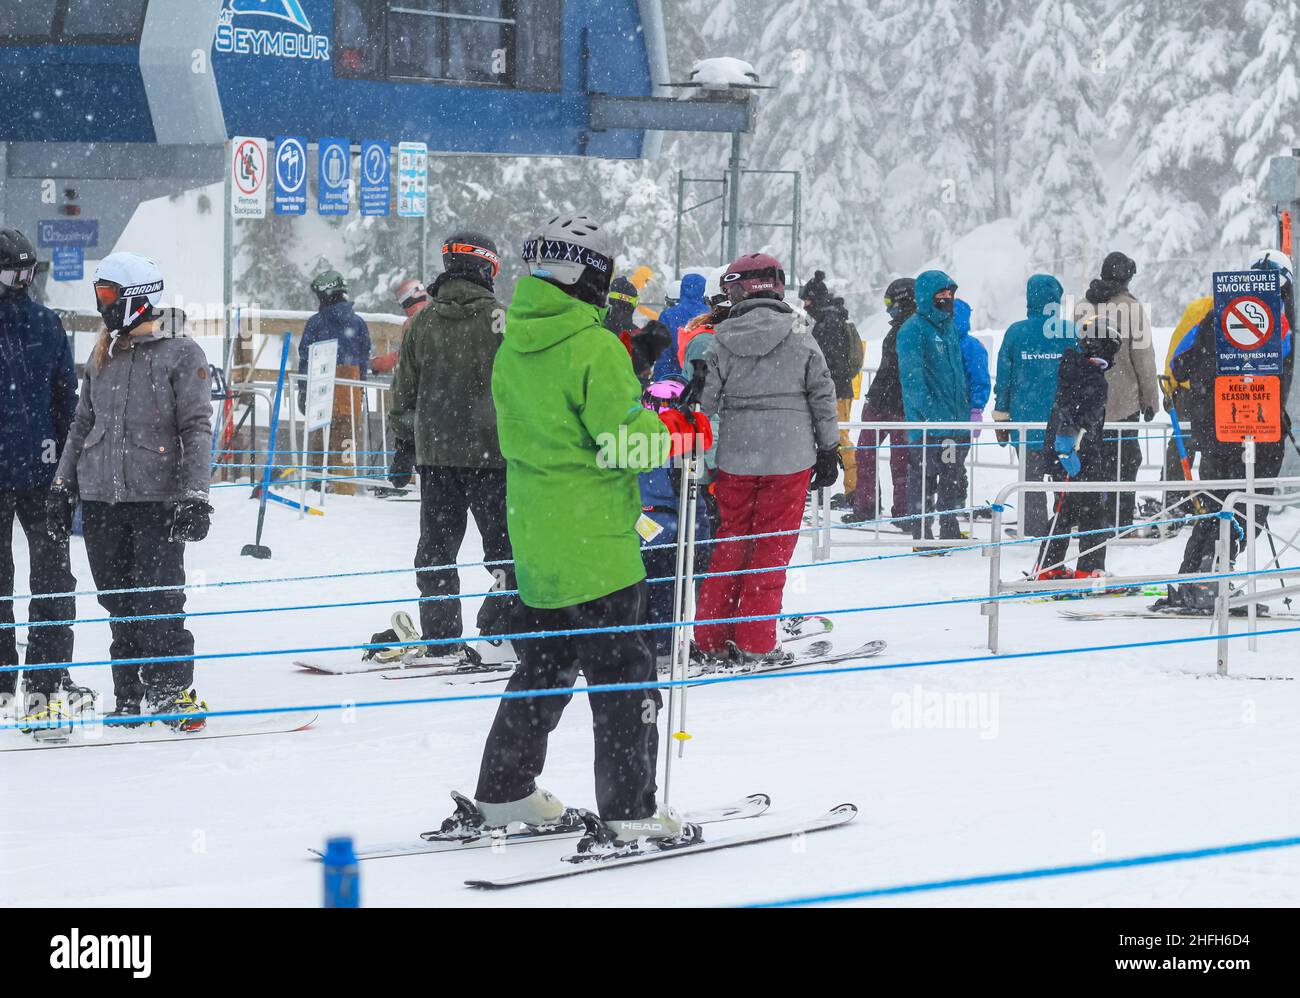 Skifahrer in der Skiregion stehen in einer Schlange vor einer Liftstation im Mt Seymour Ski Resort BC, Kanada-Februar 4,2021. Straßenansicht, Reisefoto, Stockfoto